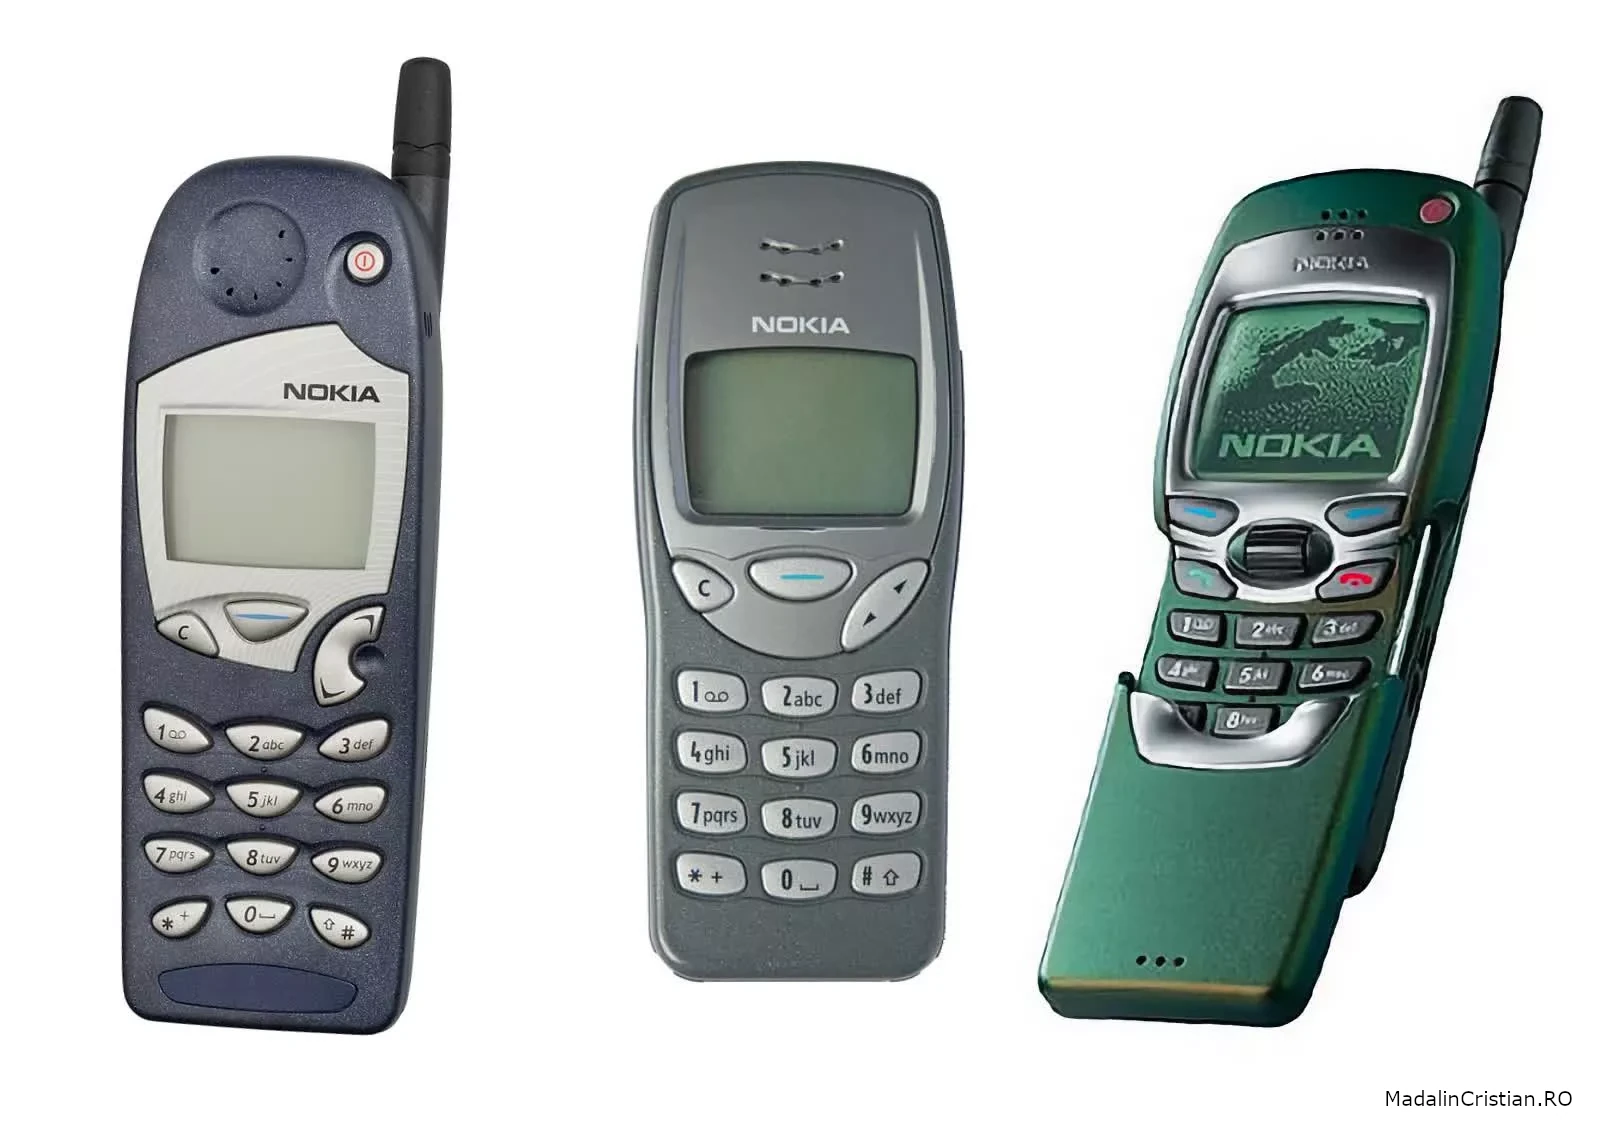 Nokia 5110 Nokia 3210 Nokia 7110